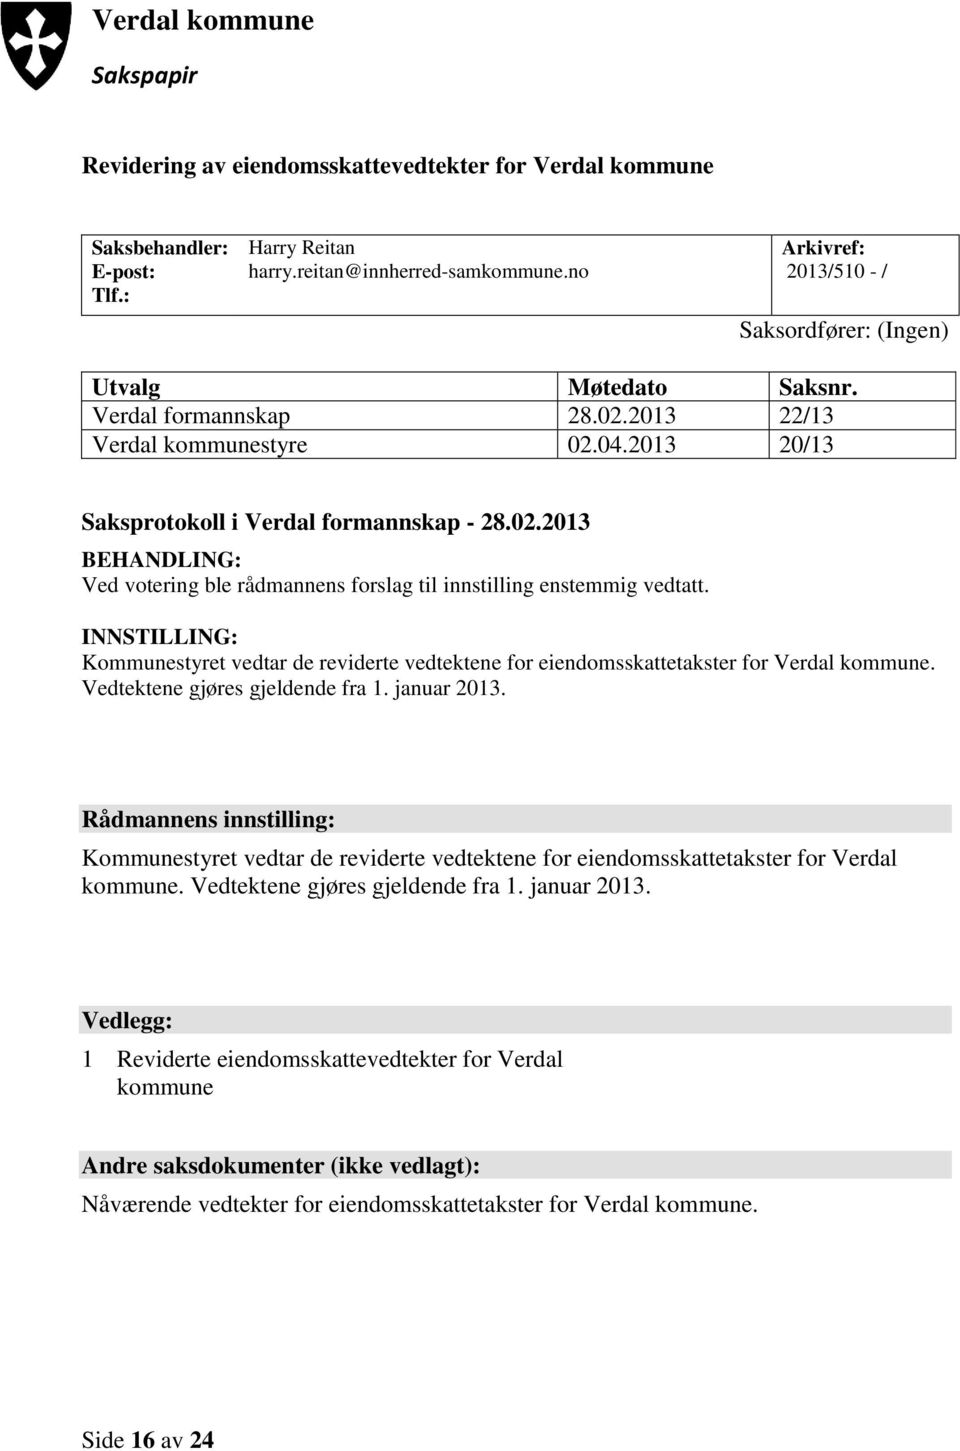 INNSTILLING: Kommunestyret vedtar de reviderte vedtektene for eiendomsskattetakster for Verdal kommune. Vedtektene gjøres gjeldende fra 1. januar 2013.